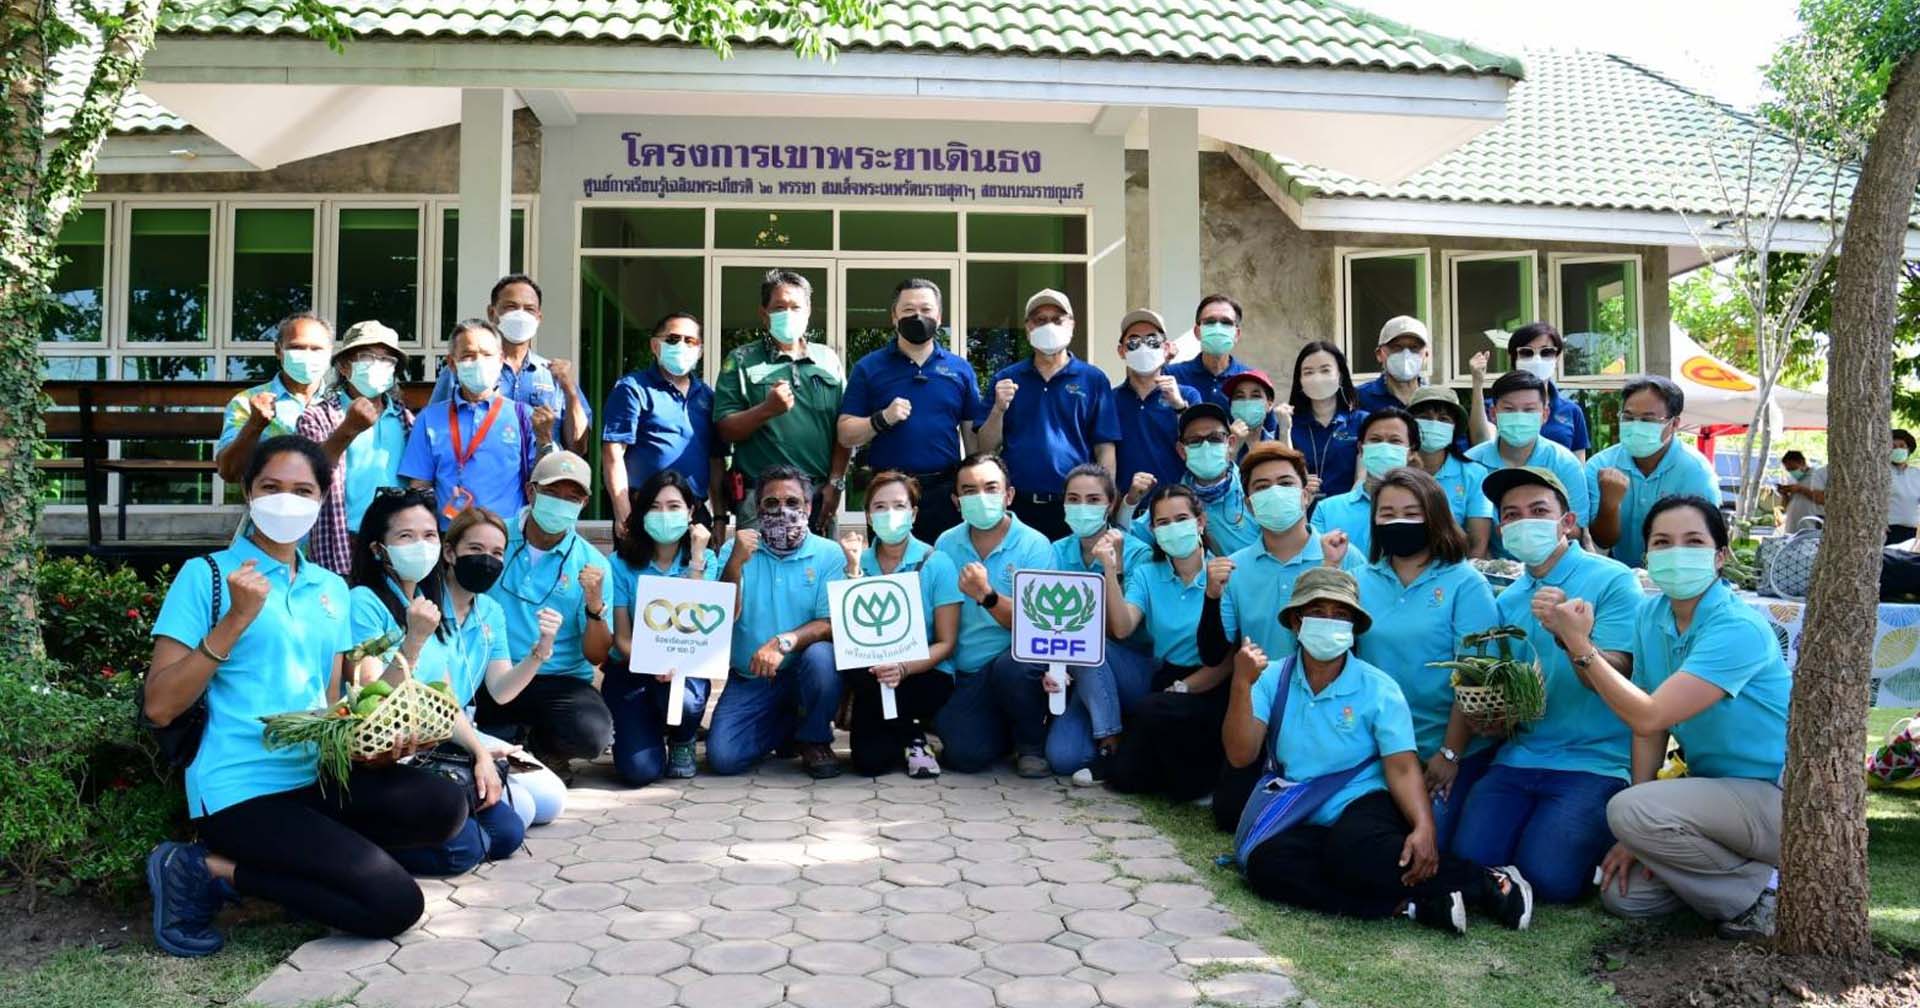 CP-CPF ร่วมเพิ่มพื้นที่สีเขียวให้ไทย 6,971 ไร่ ลดการปล่อยก๊าซเรือนกระจก